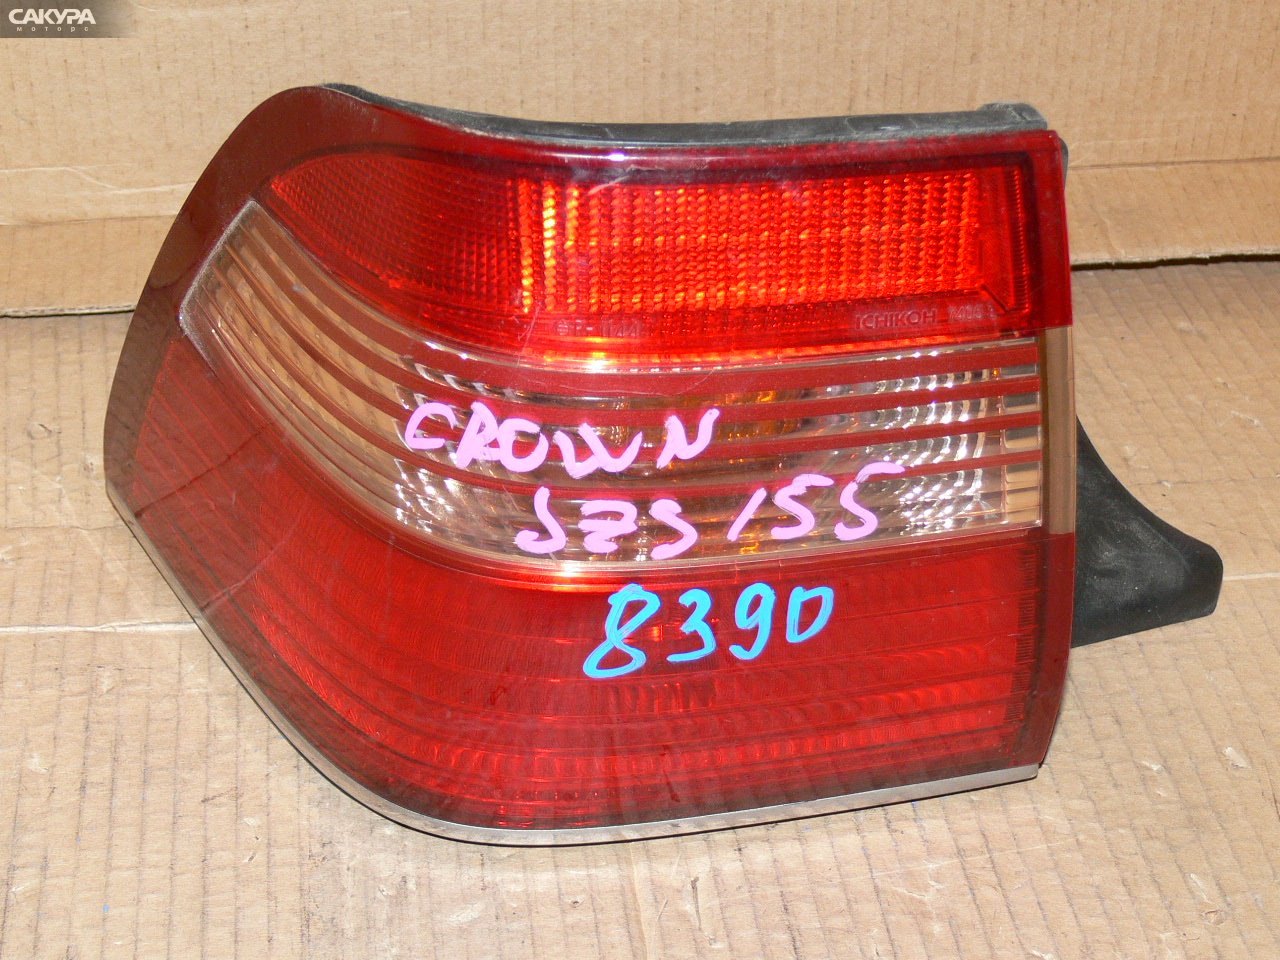 Фонарь стоп-сигнала левый Toyota Crown JZS155 30-211: купить в Сакура Иркутск.